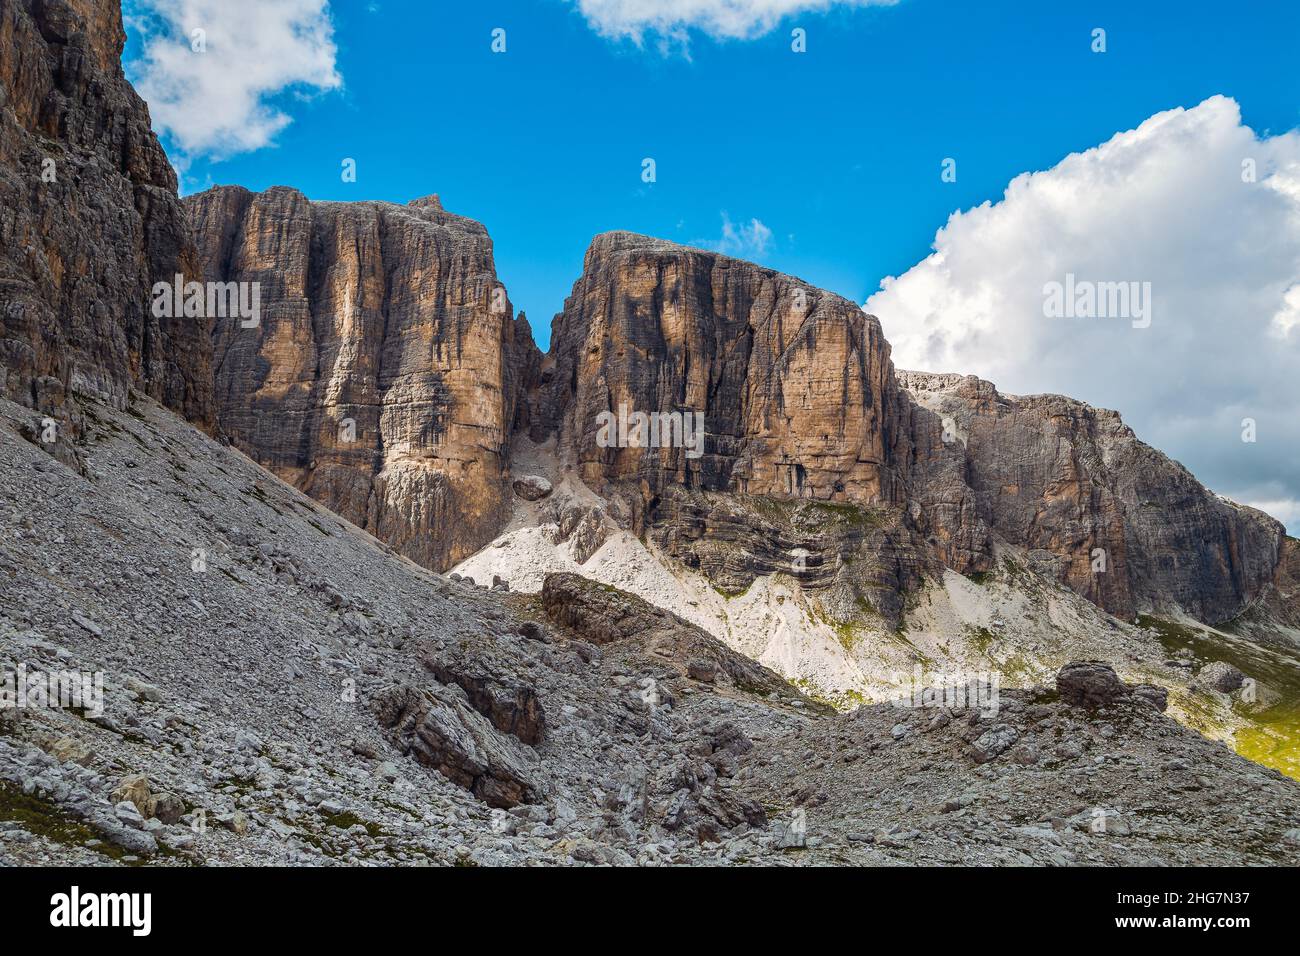 Sella Group dolomite panorama in trentino alps, Val di Fassa, Italy Stock Photo